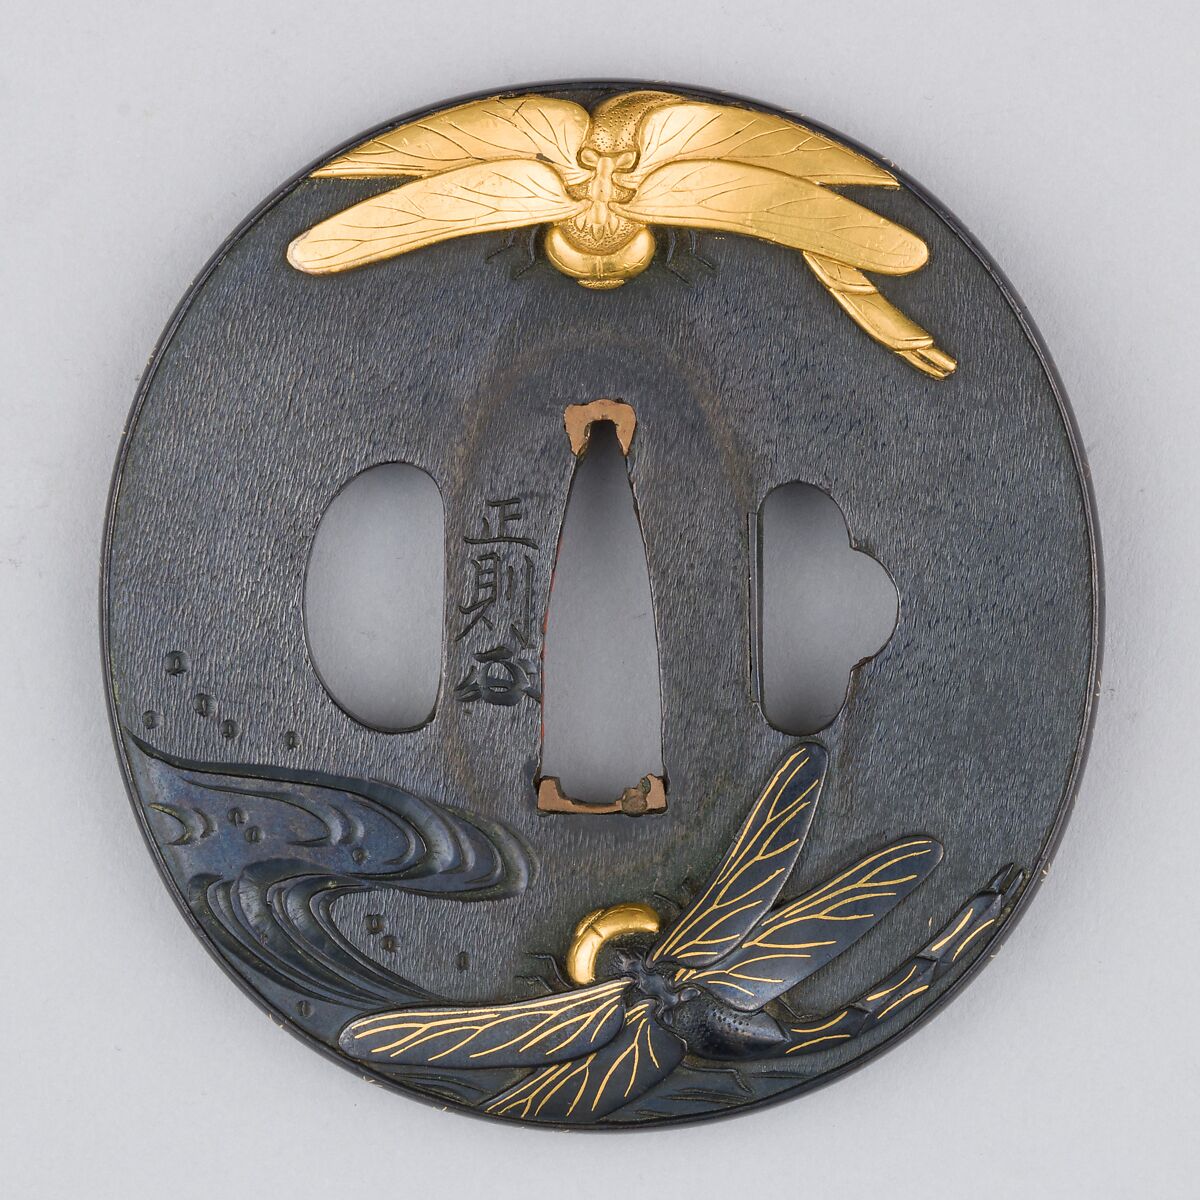 Sword Guard (Tsuba), Copper-gold alloy (shakudō), gold, copper, Japanese 